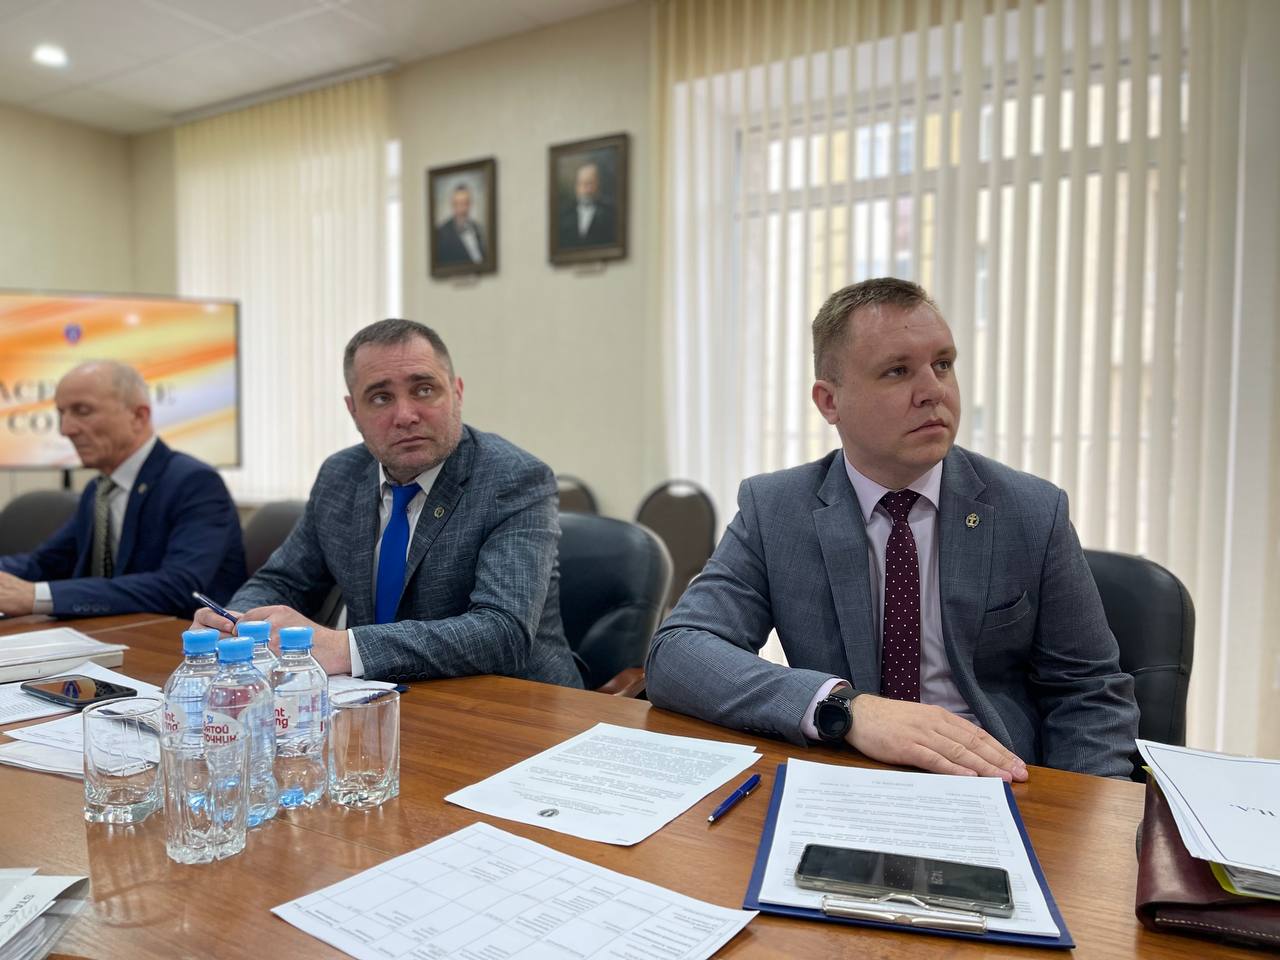 Адвокаты в Брянске рассмотрели 11 жалоб и отстранили одного коллегу юриста на три месяца